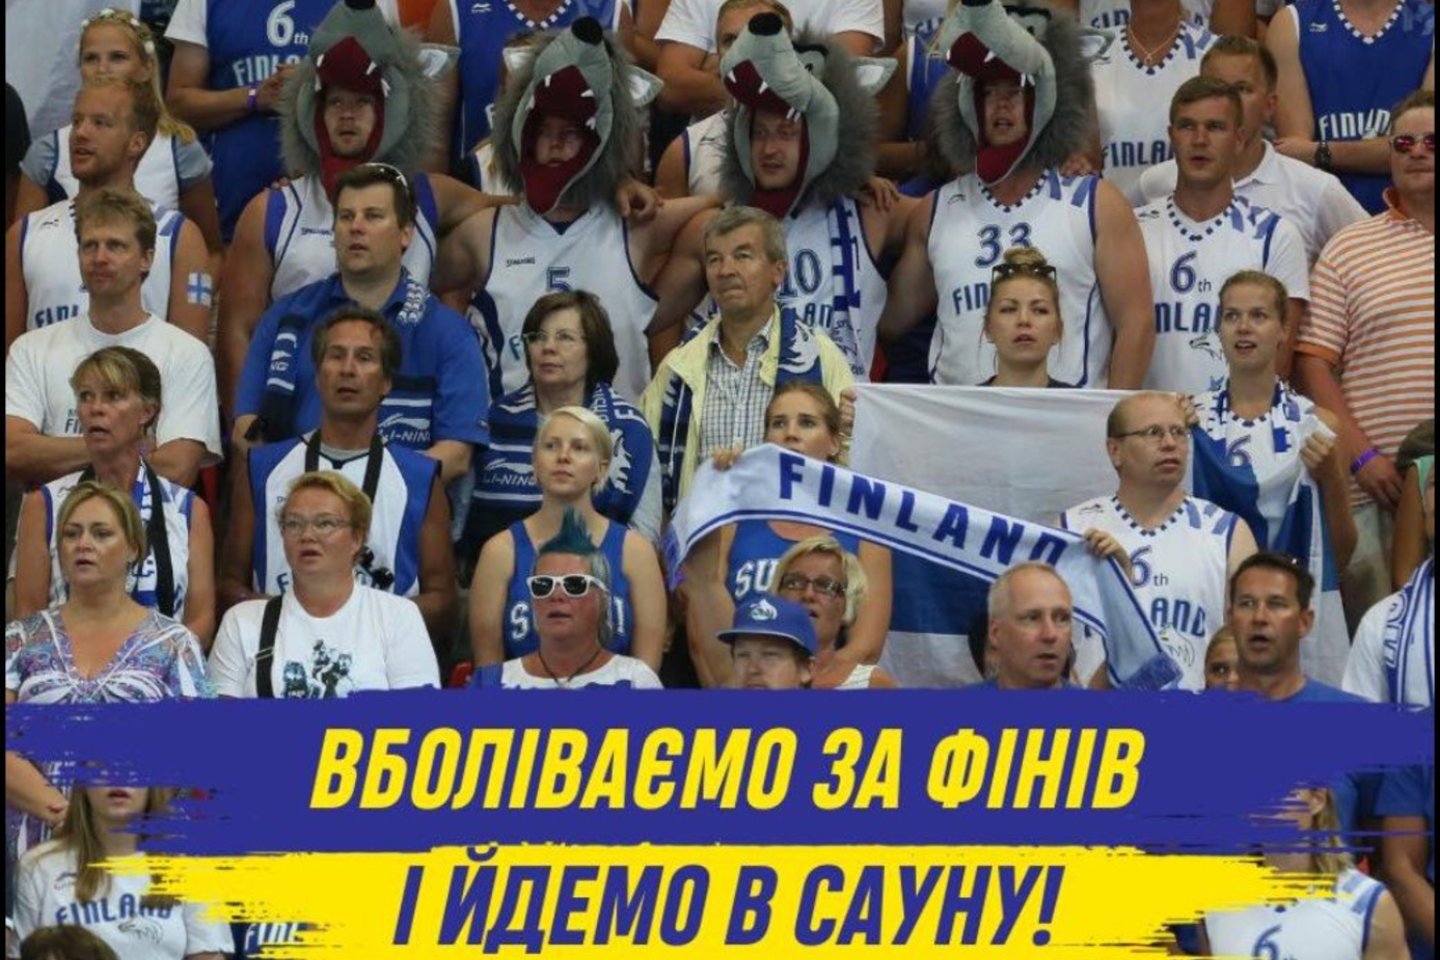  Ukrainos sirgaliai kviečiami palaikyti Suomijos futbolo rinktinę. <br> facebook nuotr.